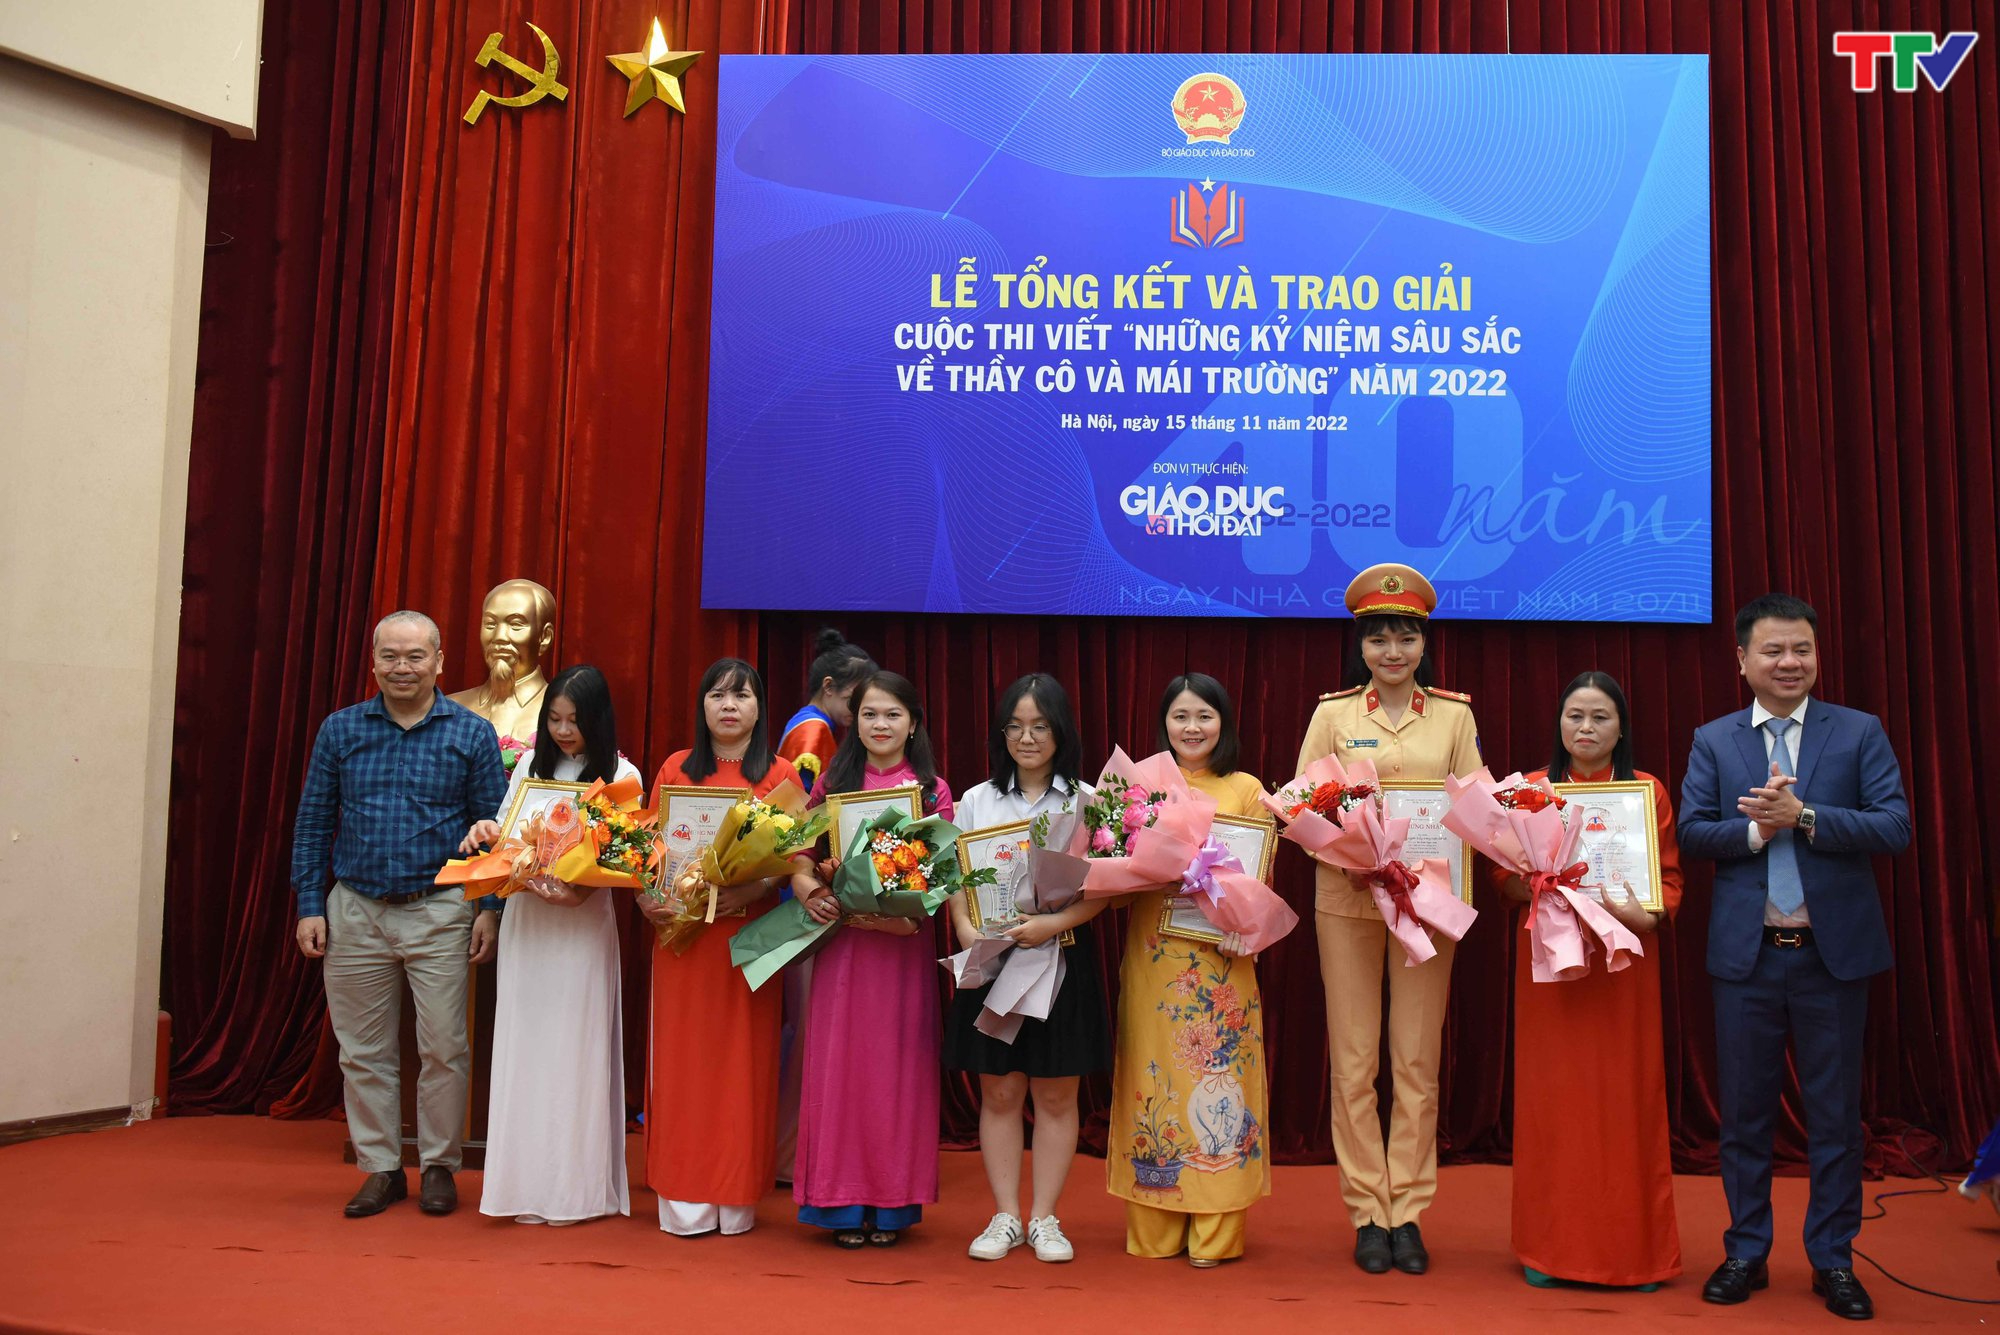 Đài PT-TH Thanh Hóa có tác phẩm đạt giải Cuộc thi viết Những kỷ niệm sâu sắc về thầy cô và mái trường năm 2022 - Ảnh 2.